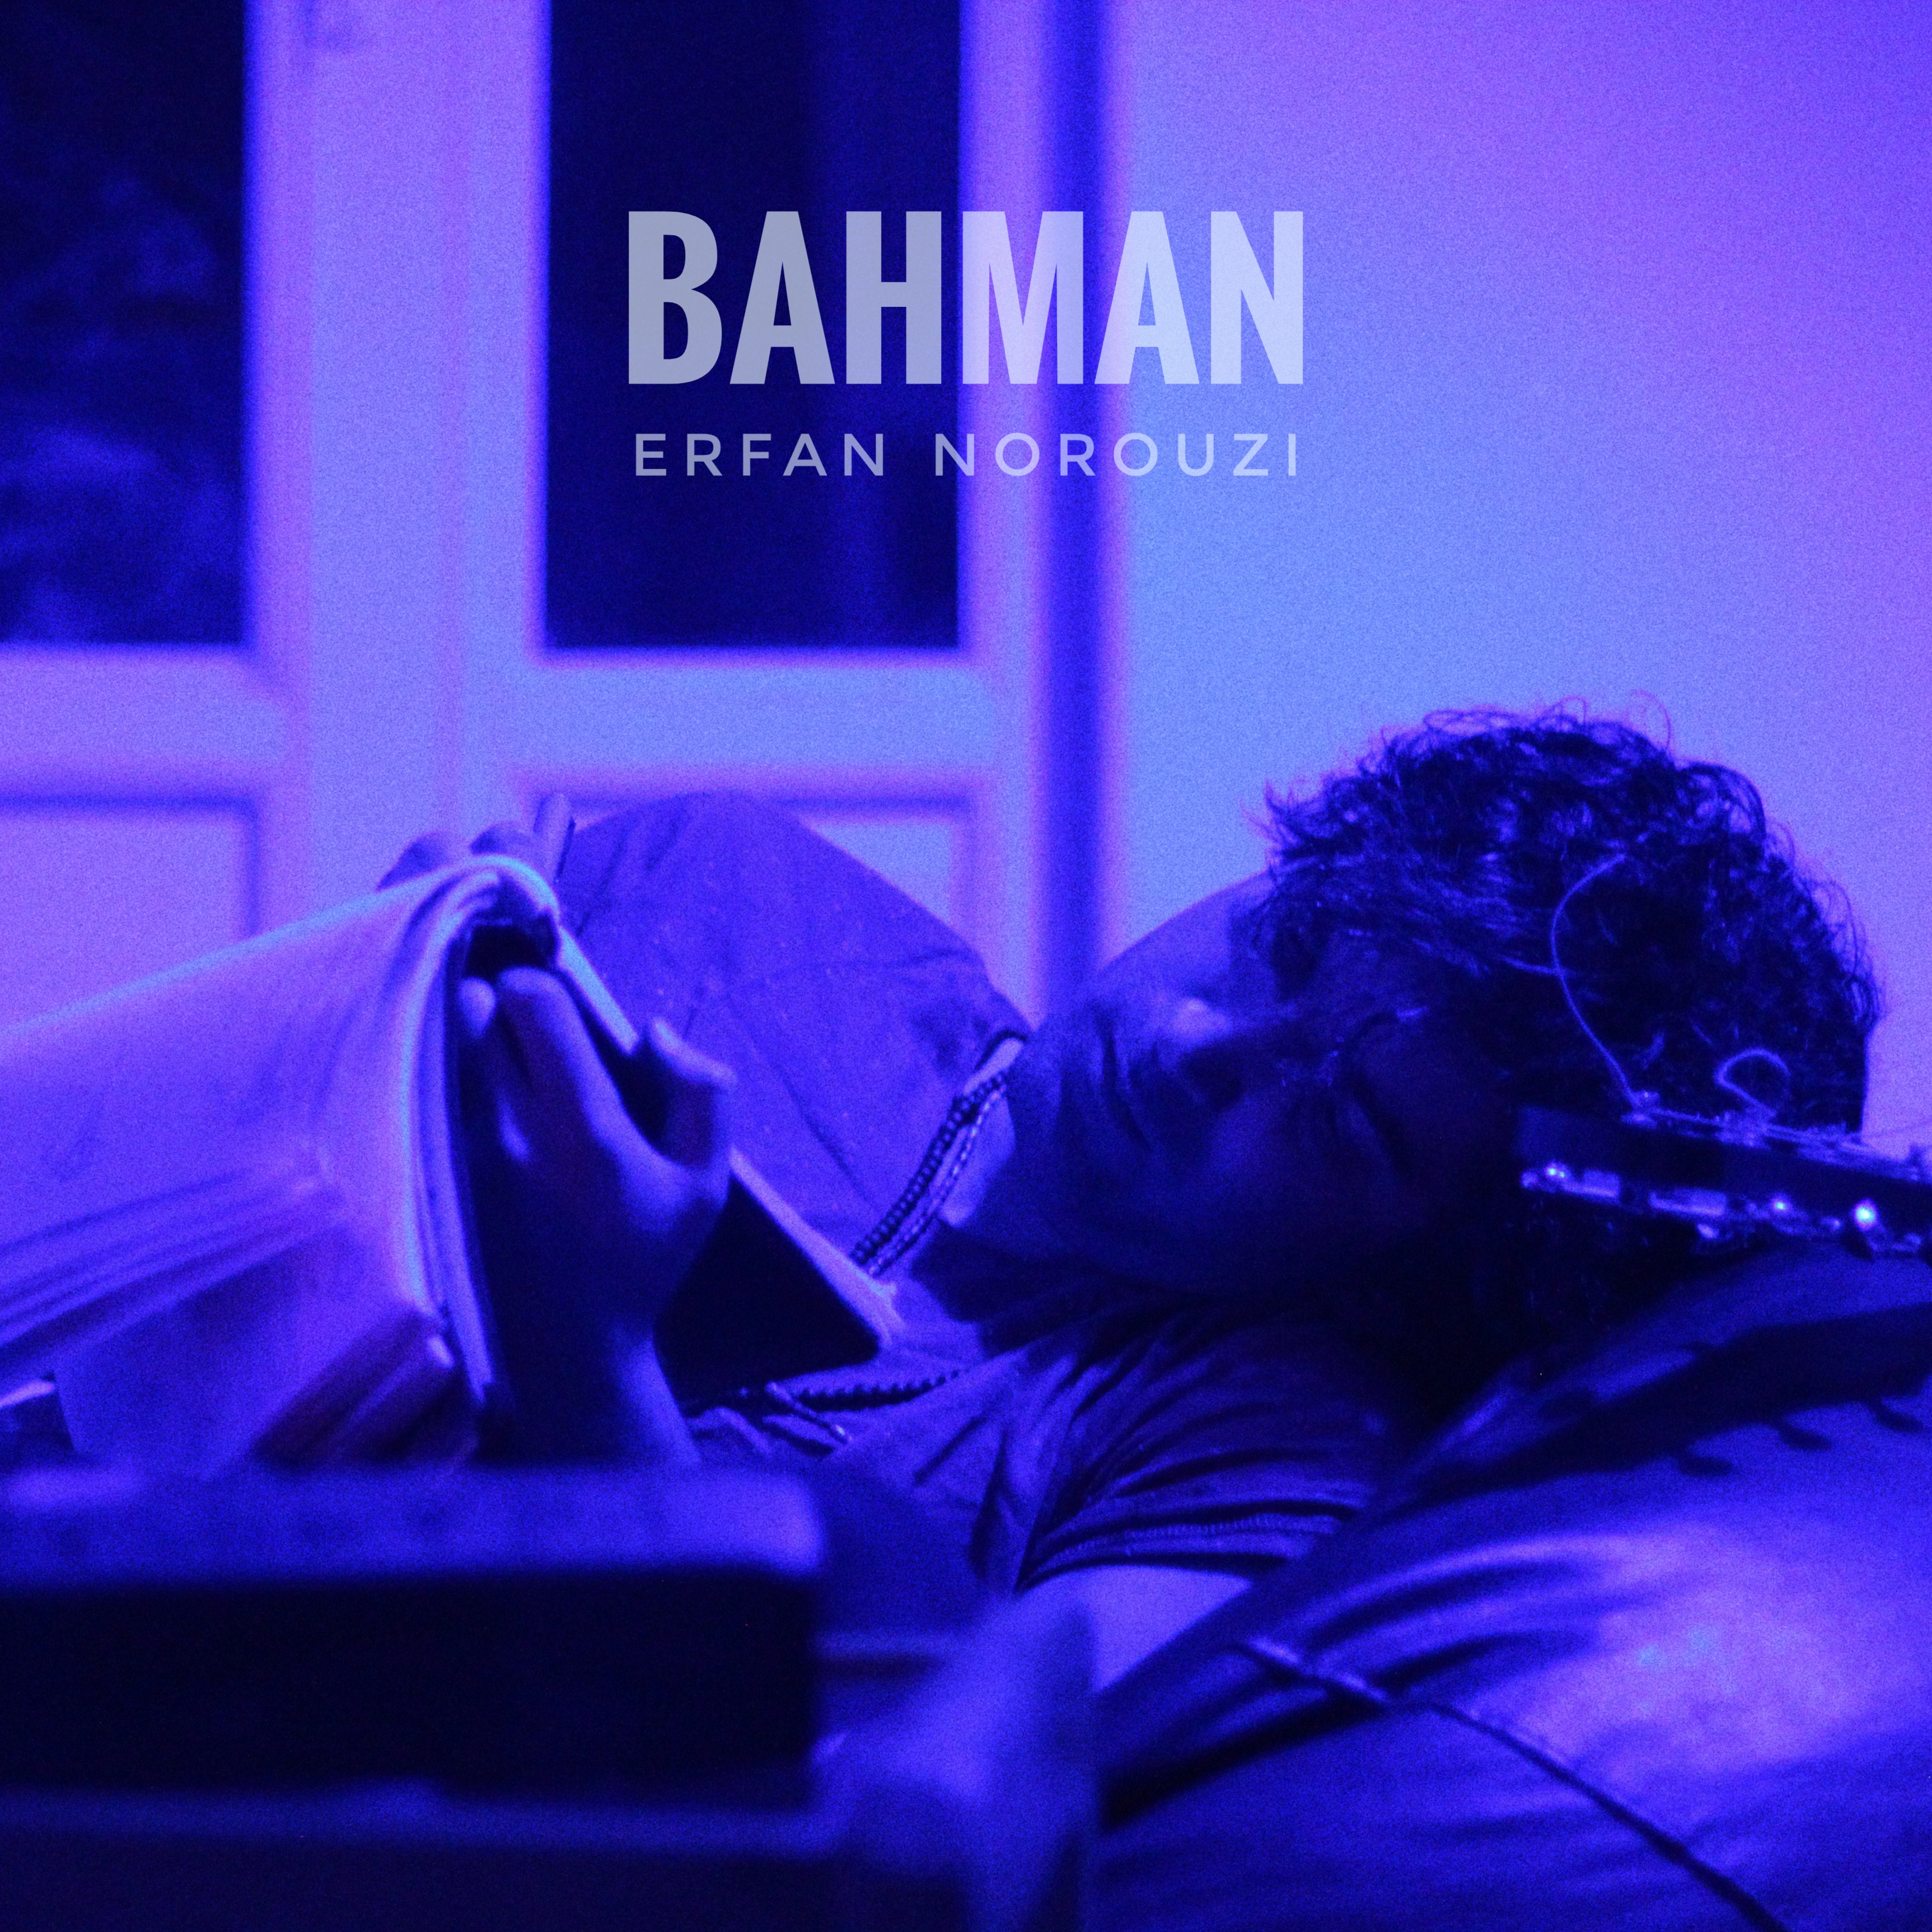  دانلود آهنگ جدید عرفان نوروزی - بهمن | Download New Music By Erfan Norouzi -  Bahman